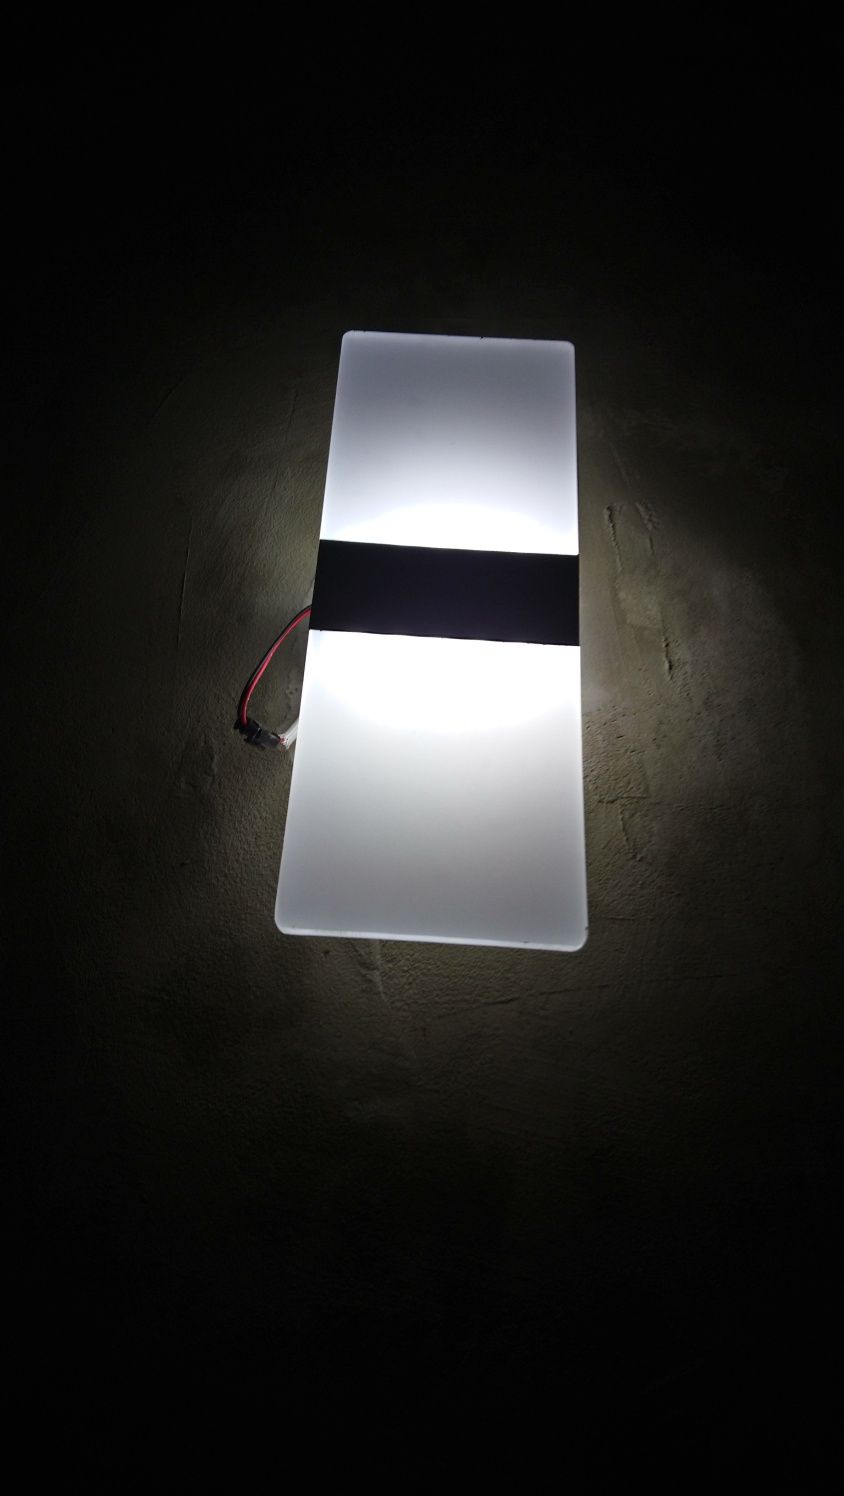 Promocja druga  tasma dodatkowa  Lampa Kinkiet led nowoczesna akrylowa